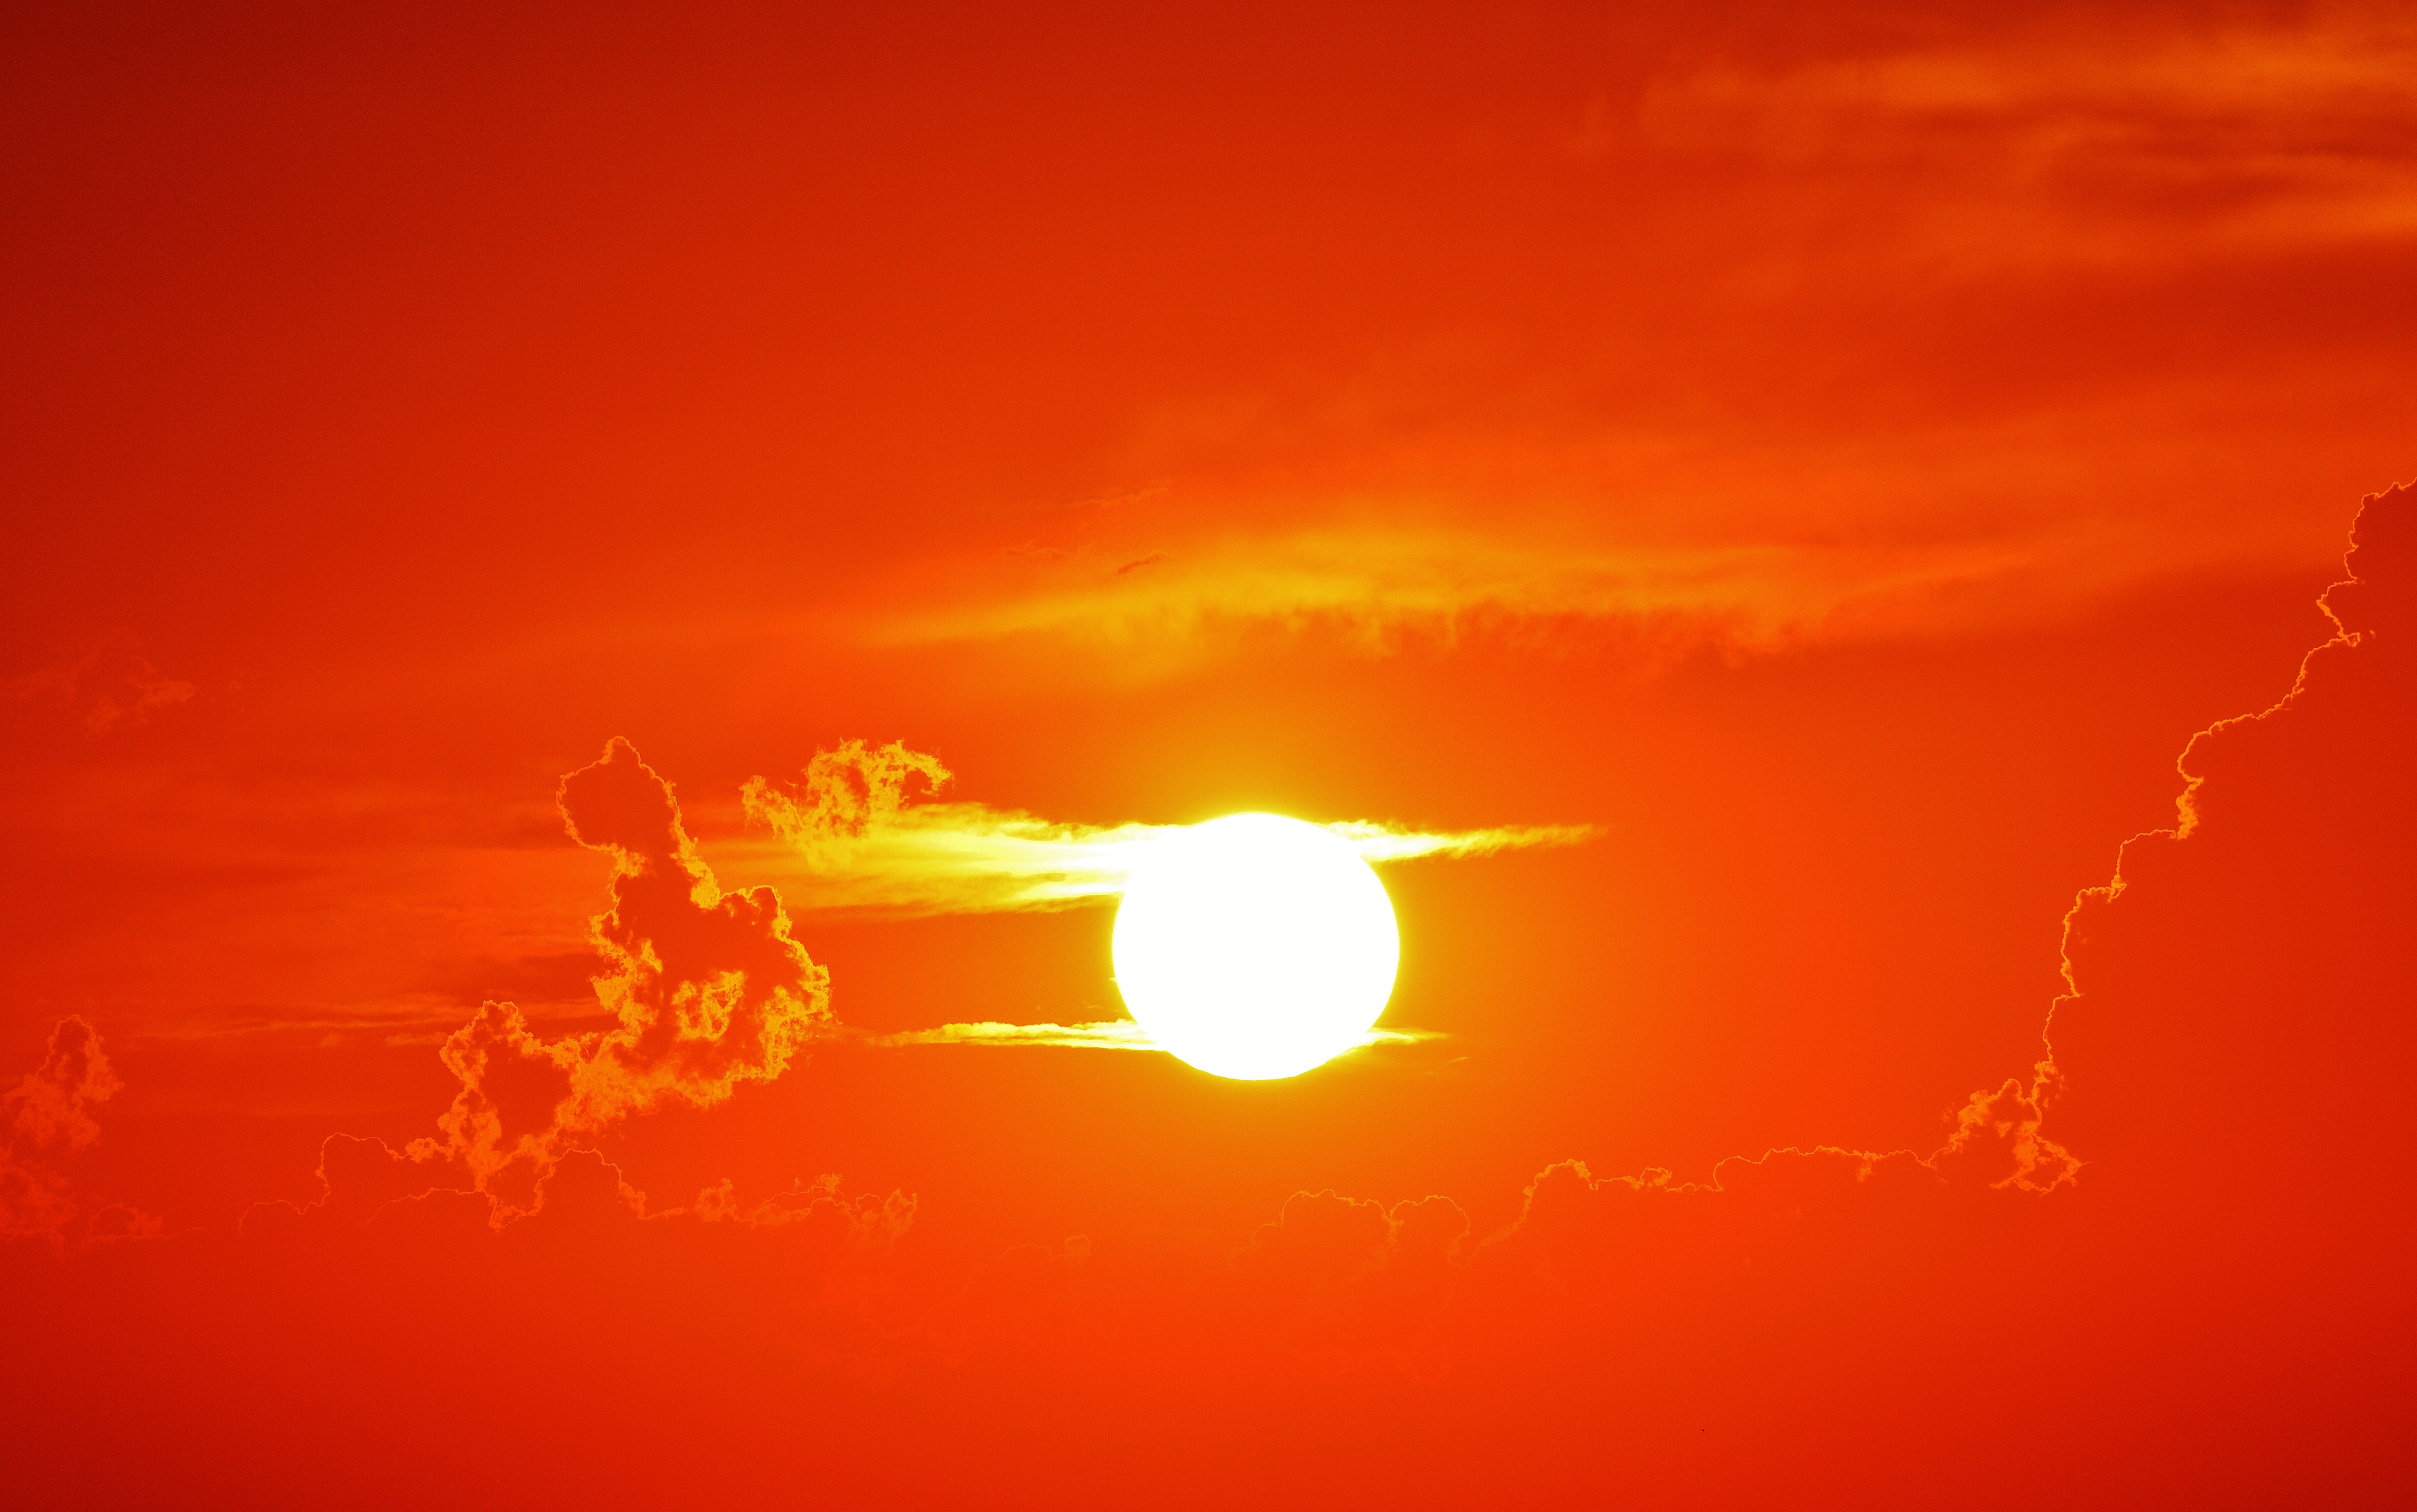 Скачать обои бесплатно Небо, Солнце, Земля/природа, Закат Солнца, Оранжевый Цвет) картинка на рабочий стол ПК